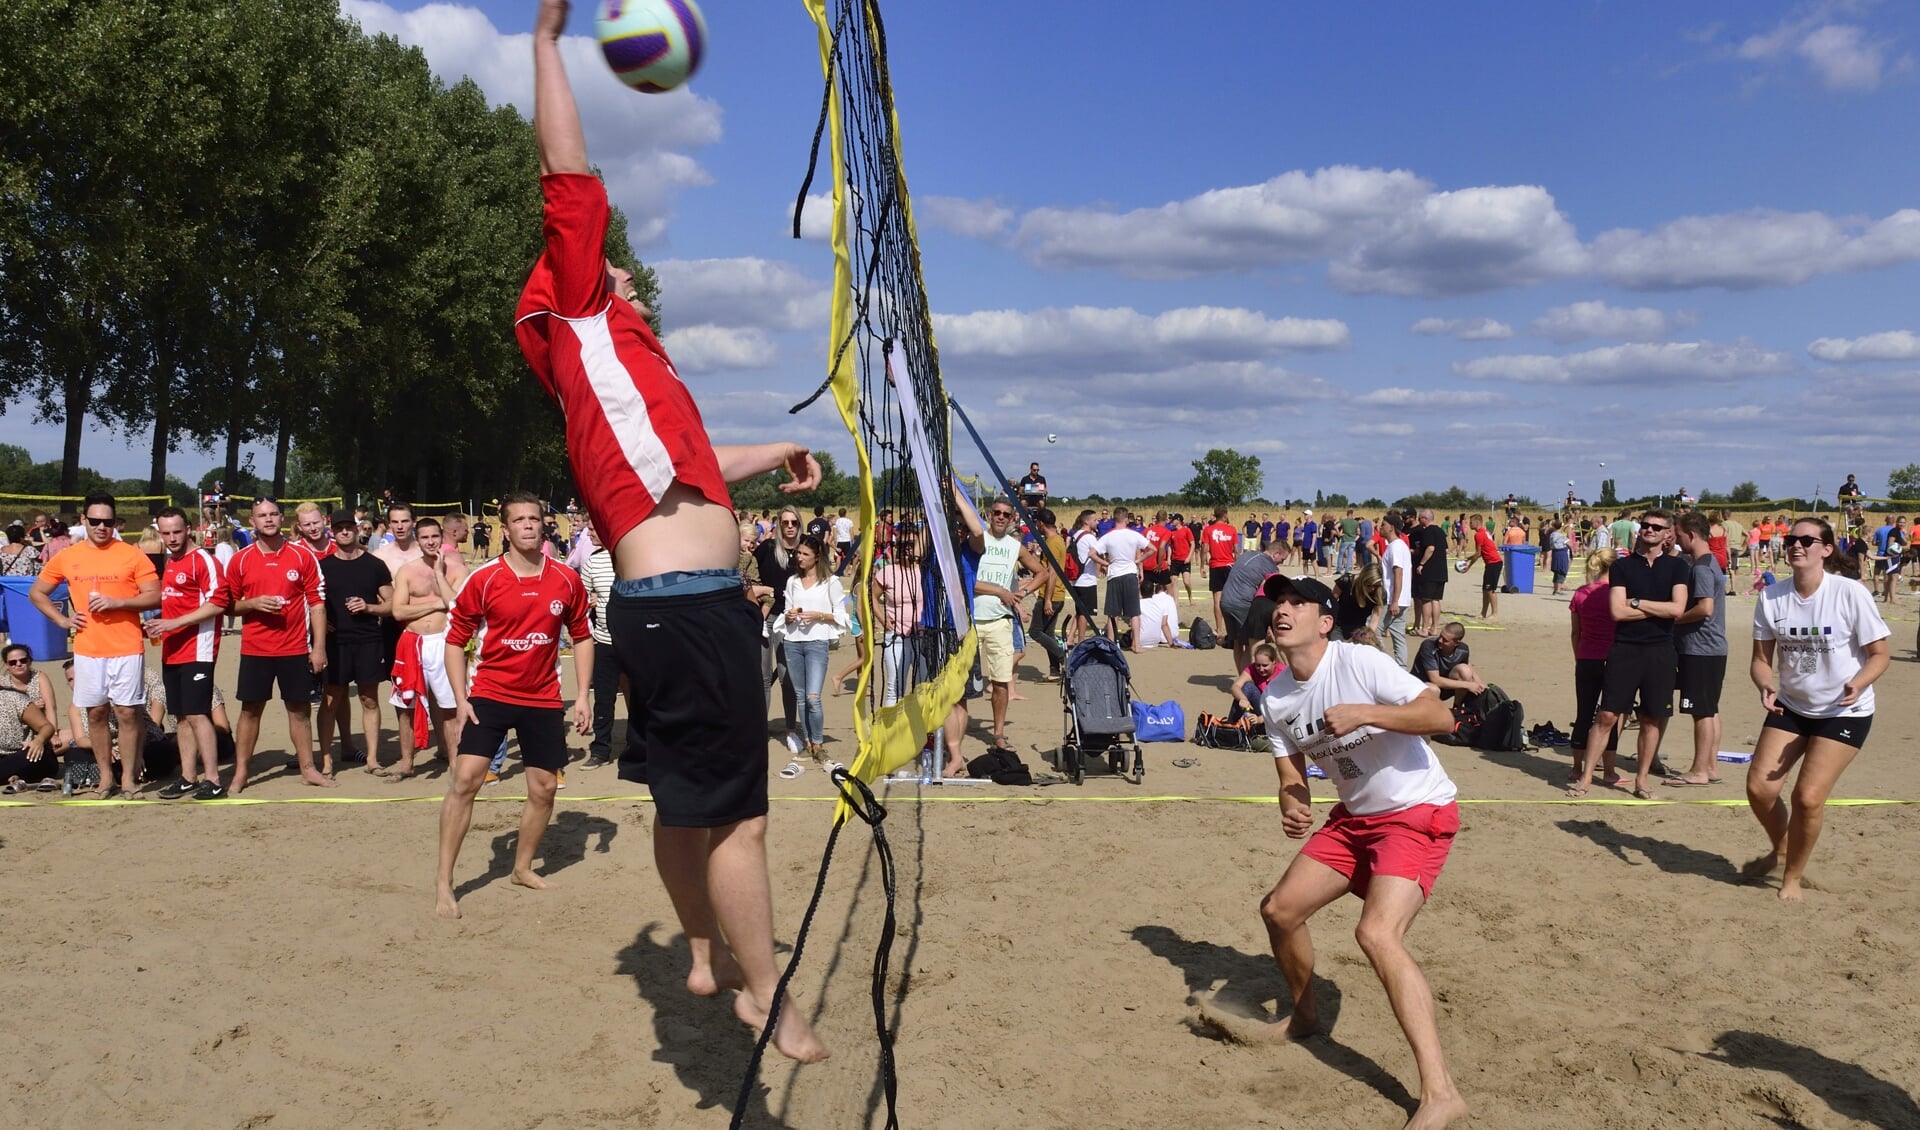 Teams strijden om de punten tijdens Beach Event Son 2019 (archieffoto)